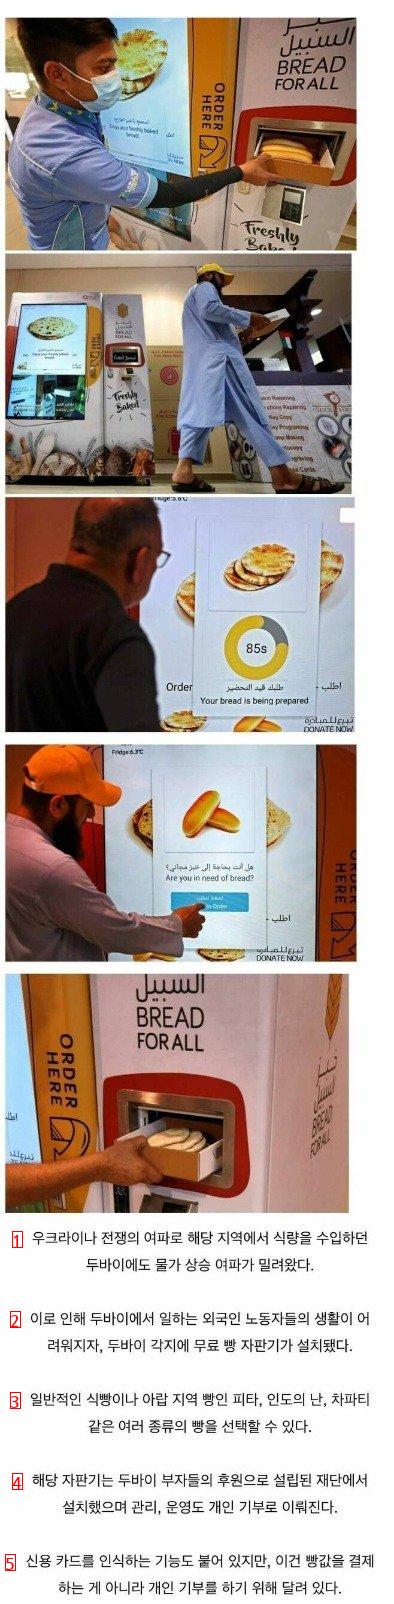 두바이에 설치된 무료 빵 자판기